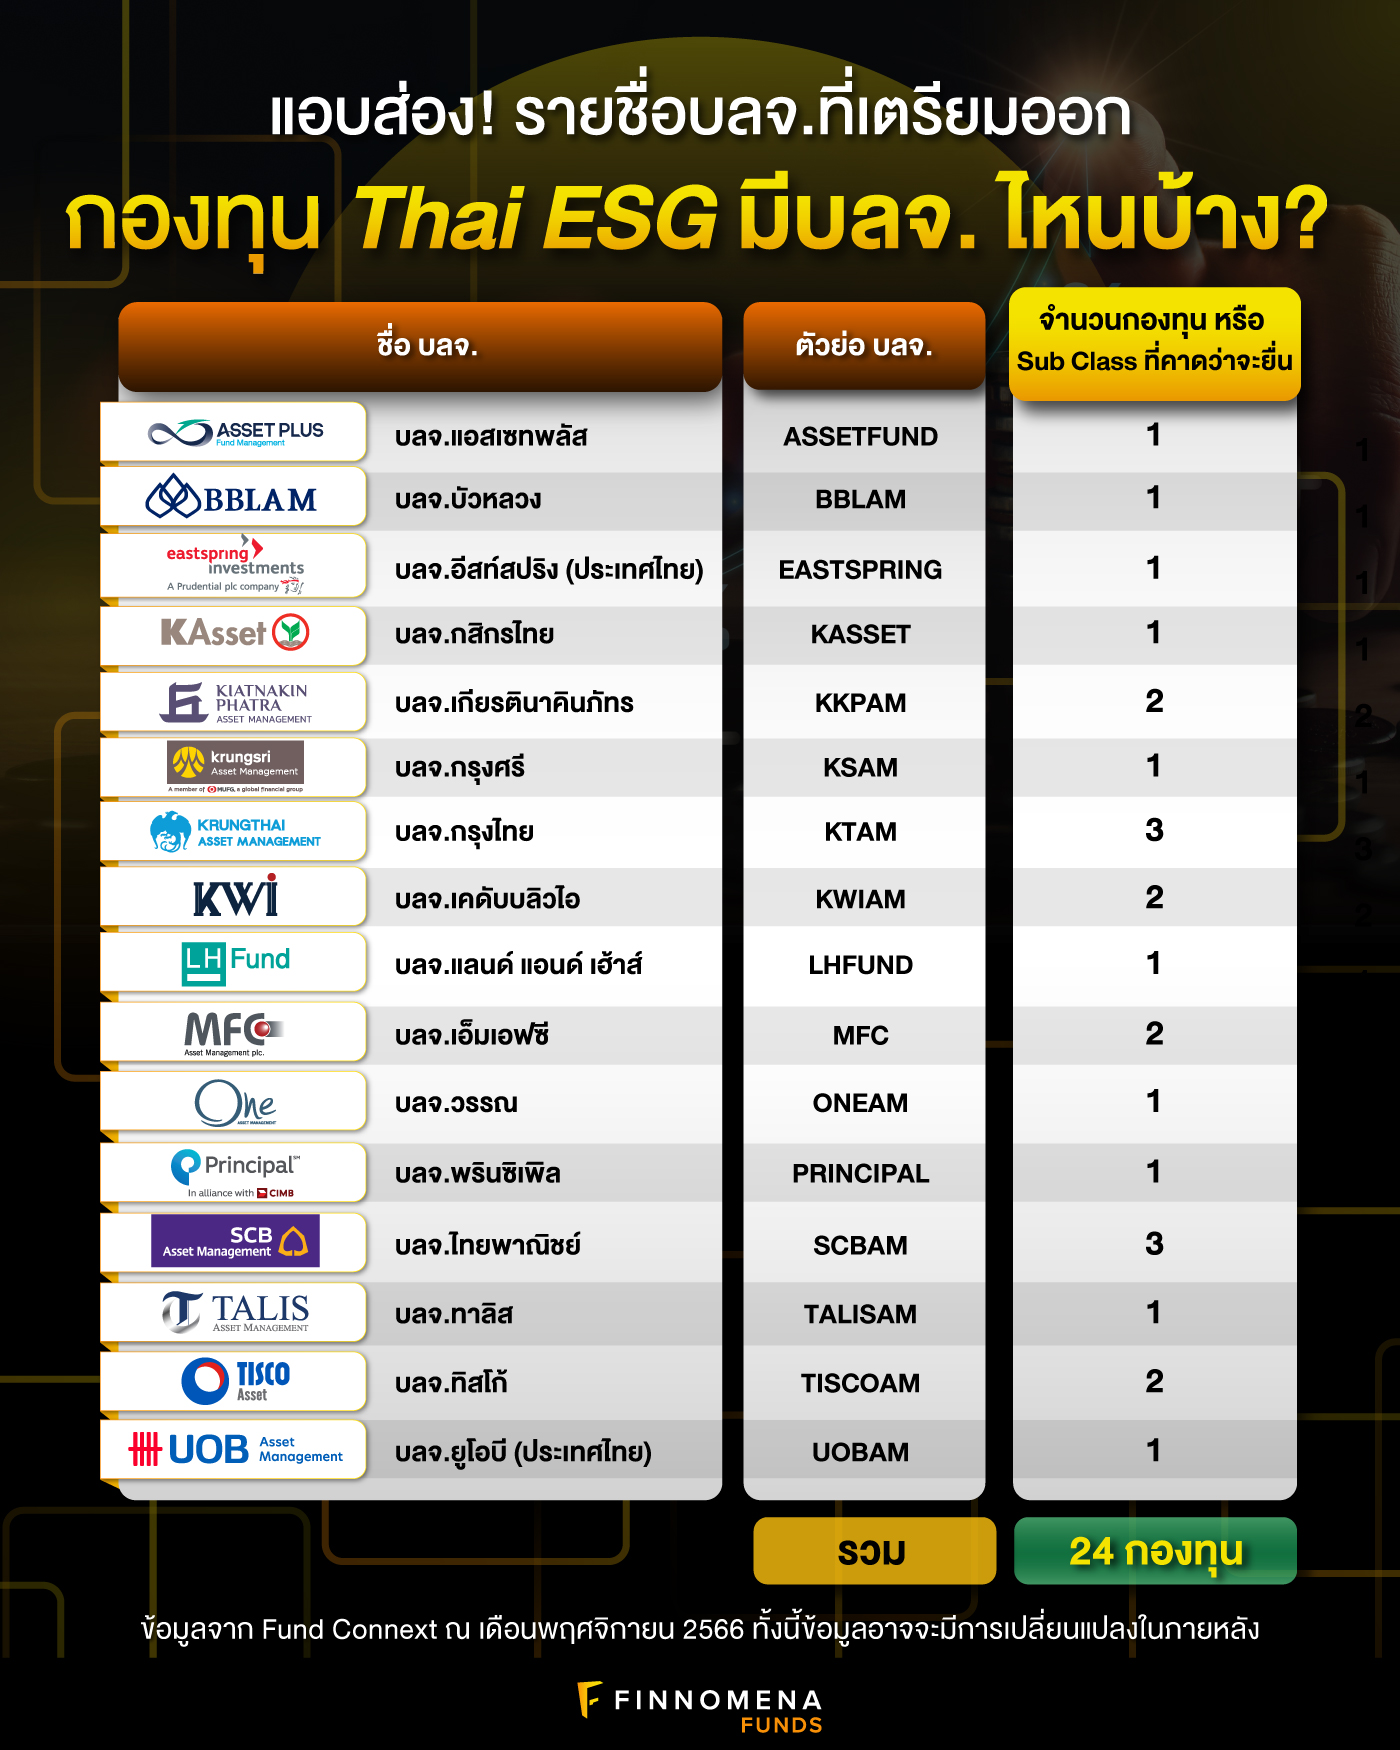 แอบส่อง! รายชื่อบลจ. ที่เตรียมออกกองทุน Thai ESG มีบลจ.ไหนบ้าง?